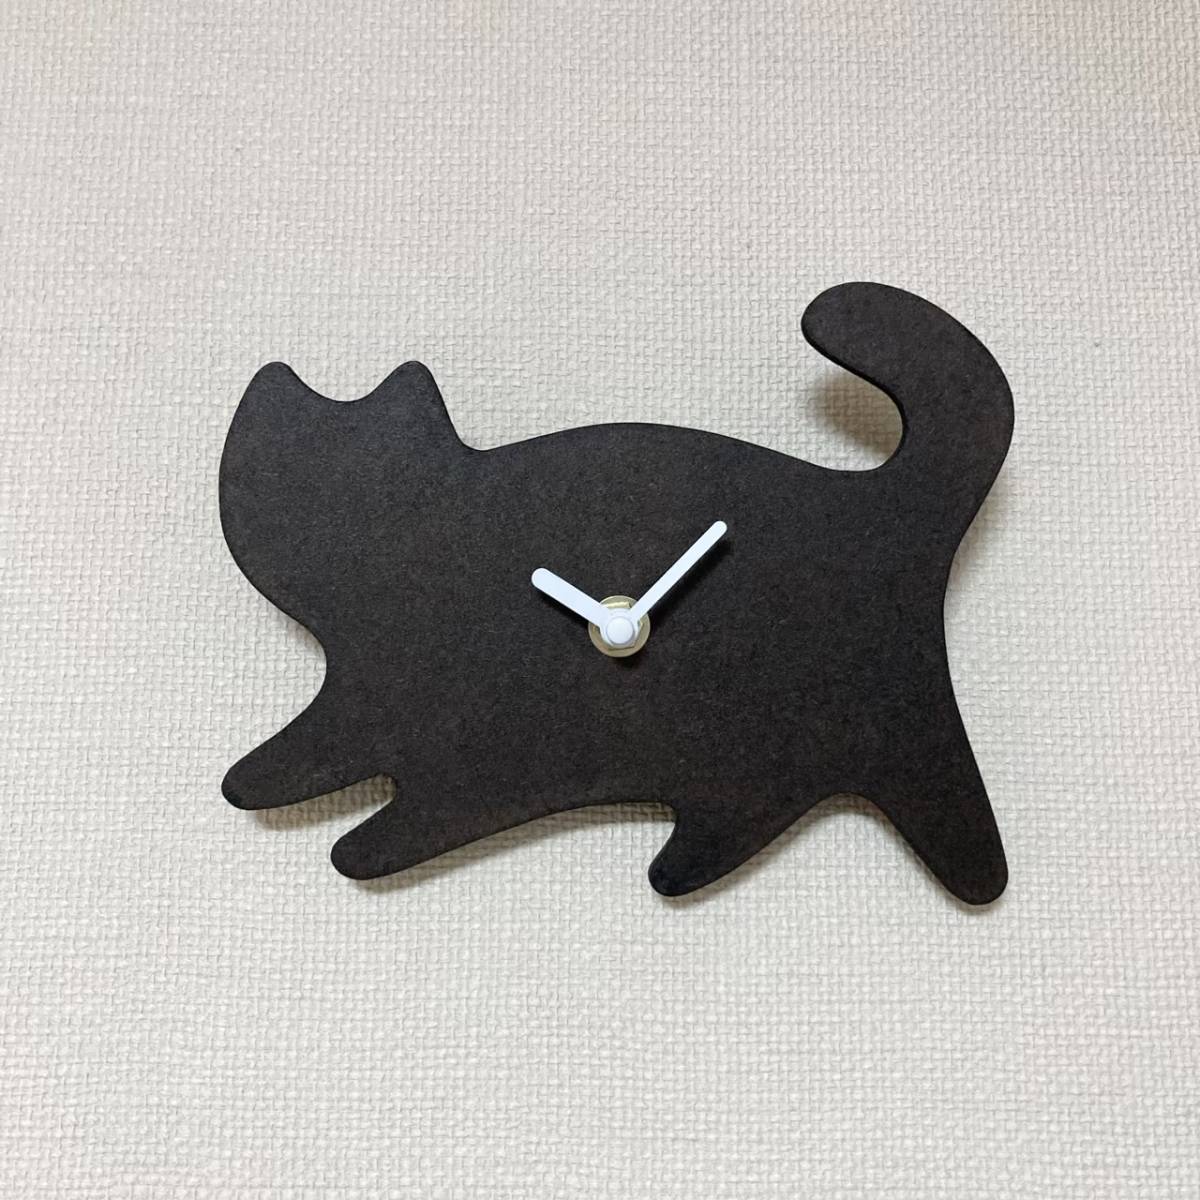 काली बिल्ली दीवार घड़ी Kuroneko हस्तनिर्मित वस्तु, टेबल घड़ी, दीवार घड़ी, दीवार घड़ी, दीवार घड़ी, अनुरूप